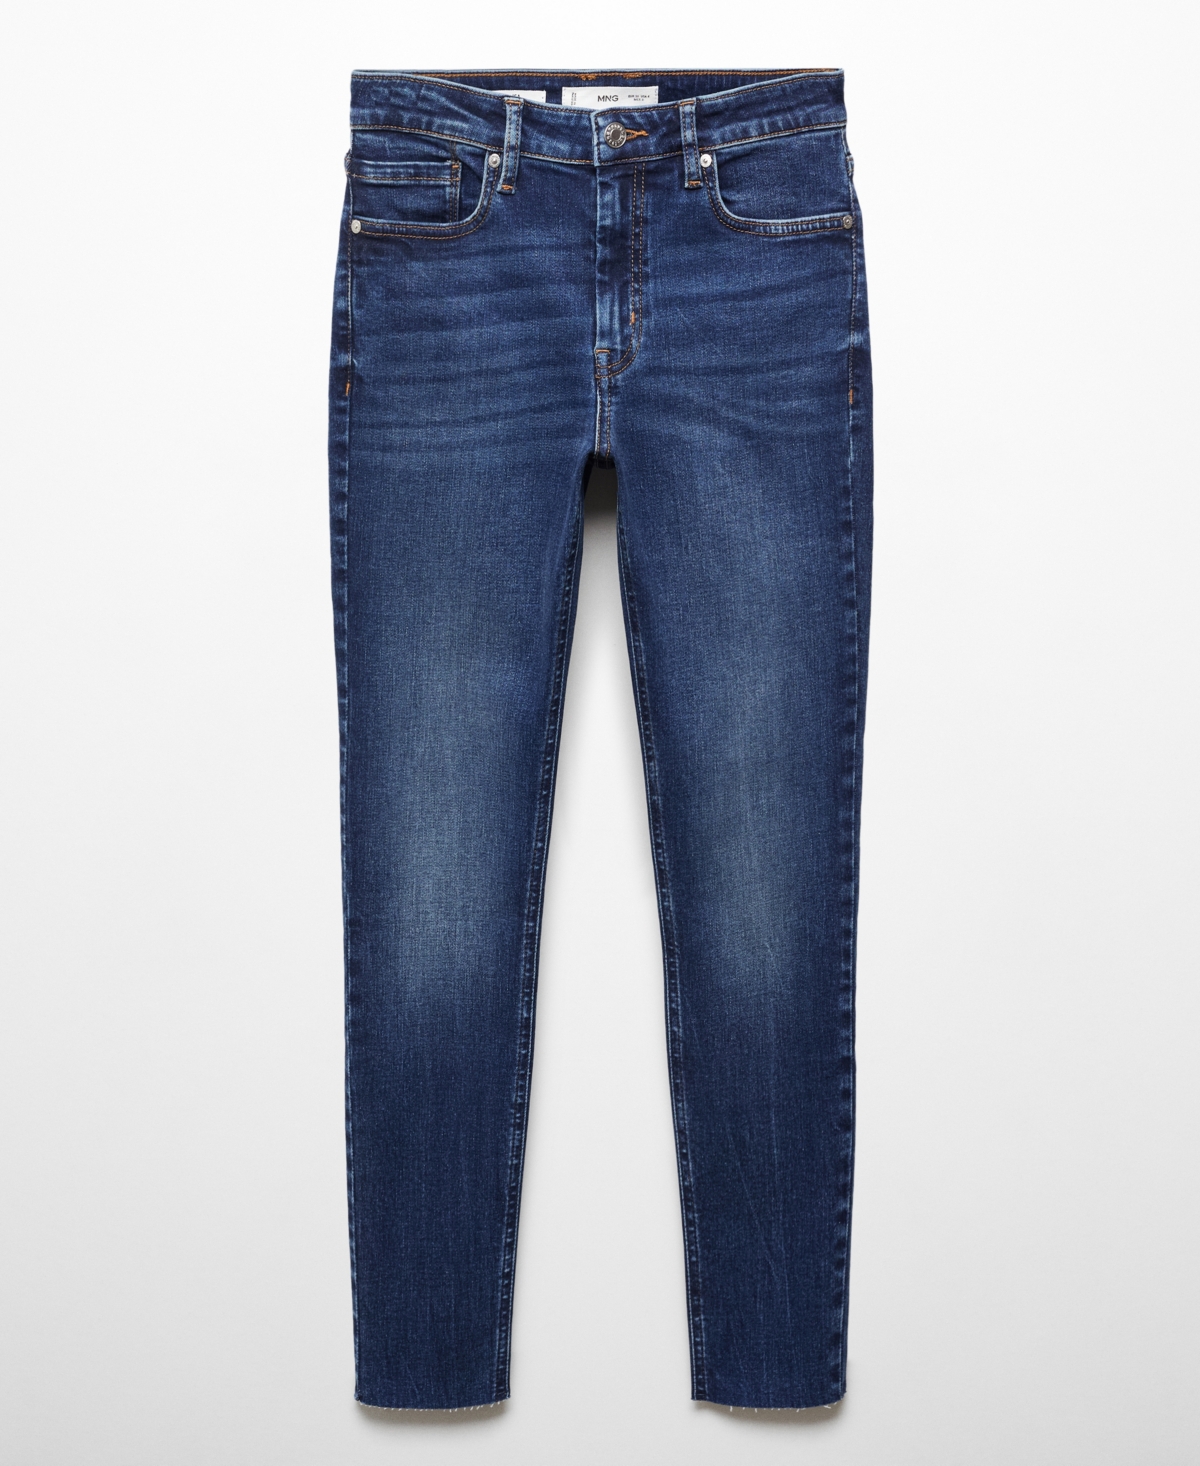 Mango Women's Skinny Cropped Jeans In Dark Blue